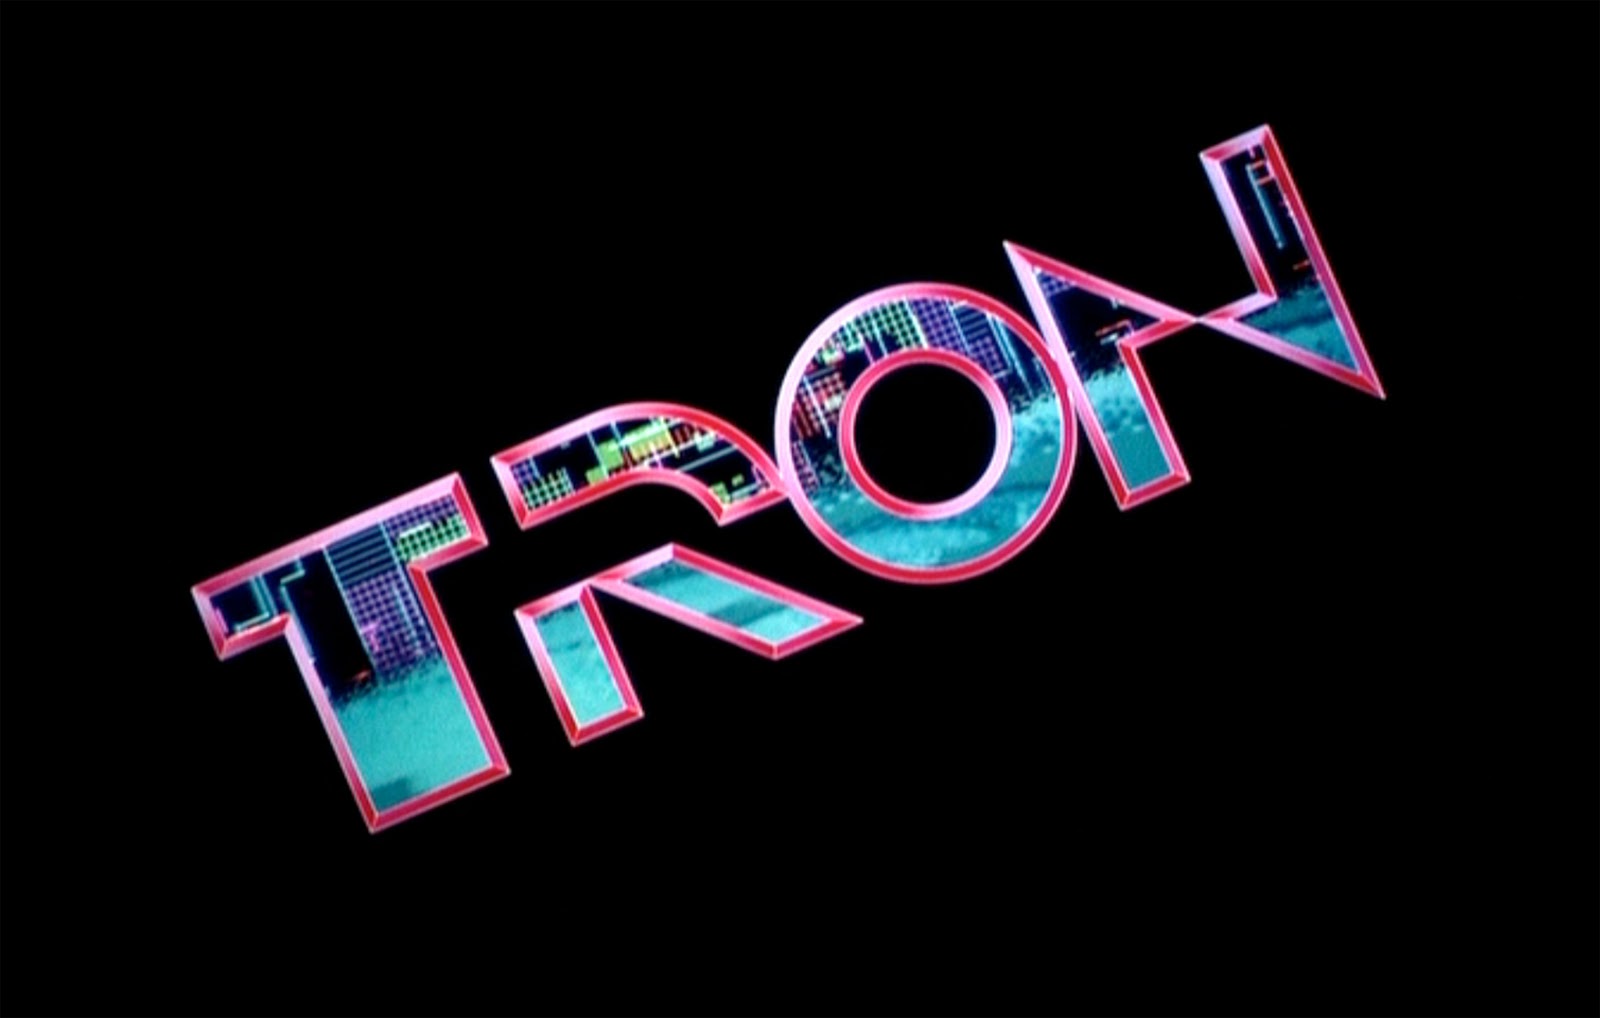 Descarga gratuita de fondo de pantalla para móvil de Tron, Películas.